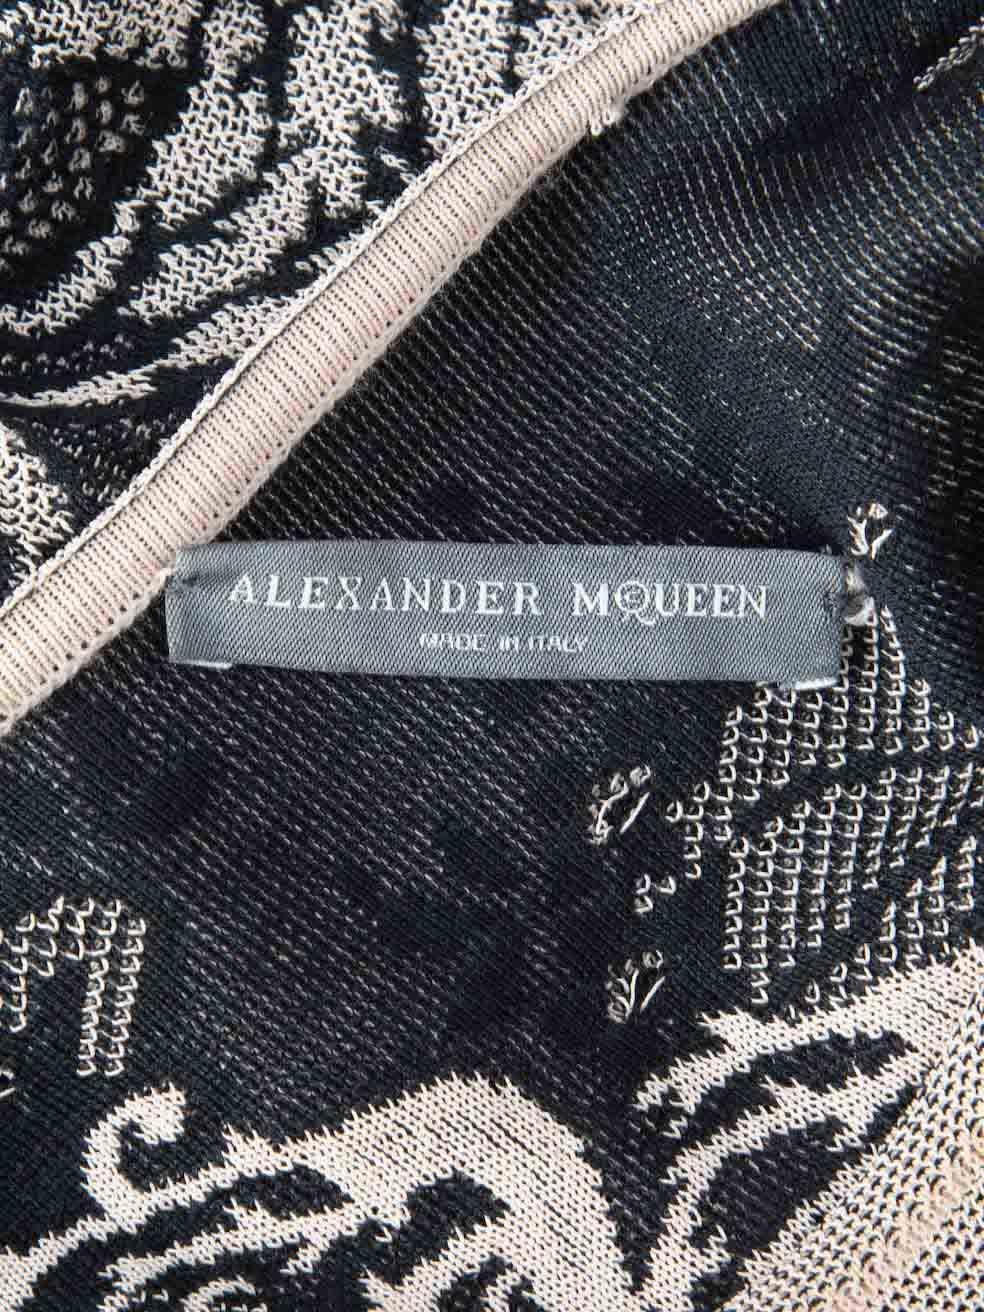 Alexander McQueen Beige Knit Patterned Dress Size M 1